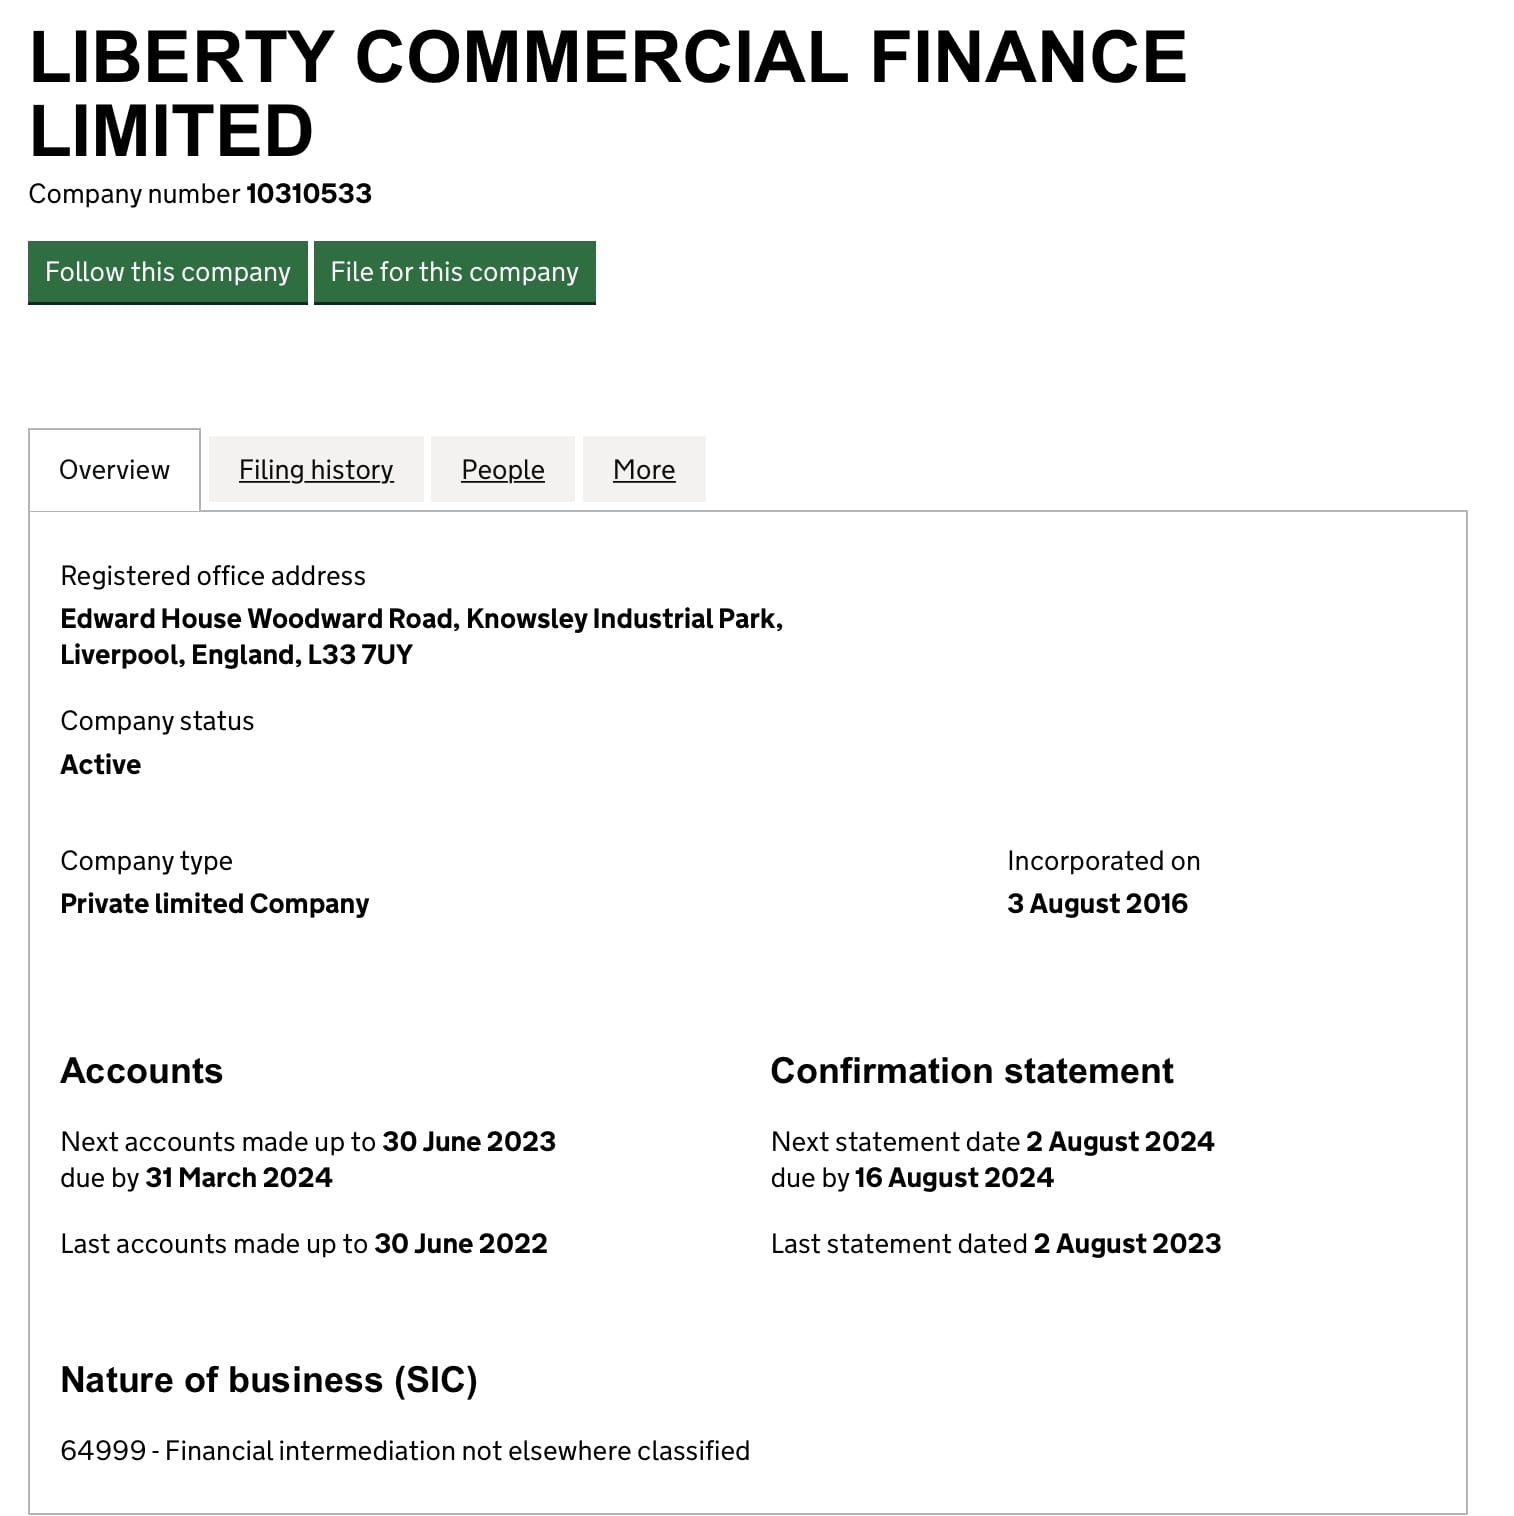 Liberty Commercial Finance Limited: отзывы о торговле и выводе средств